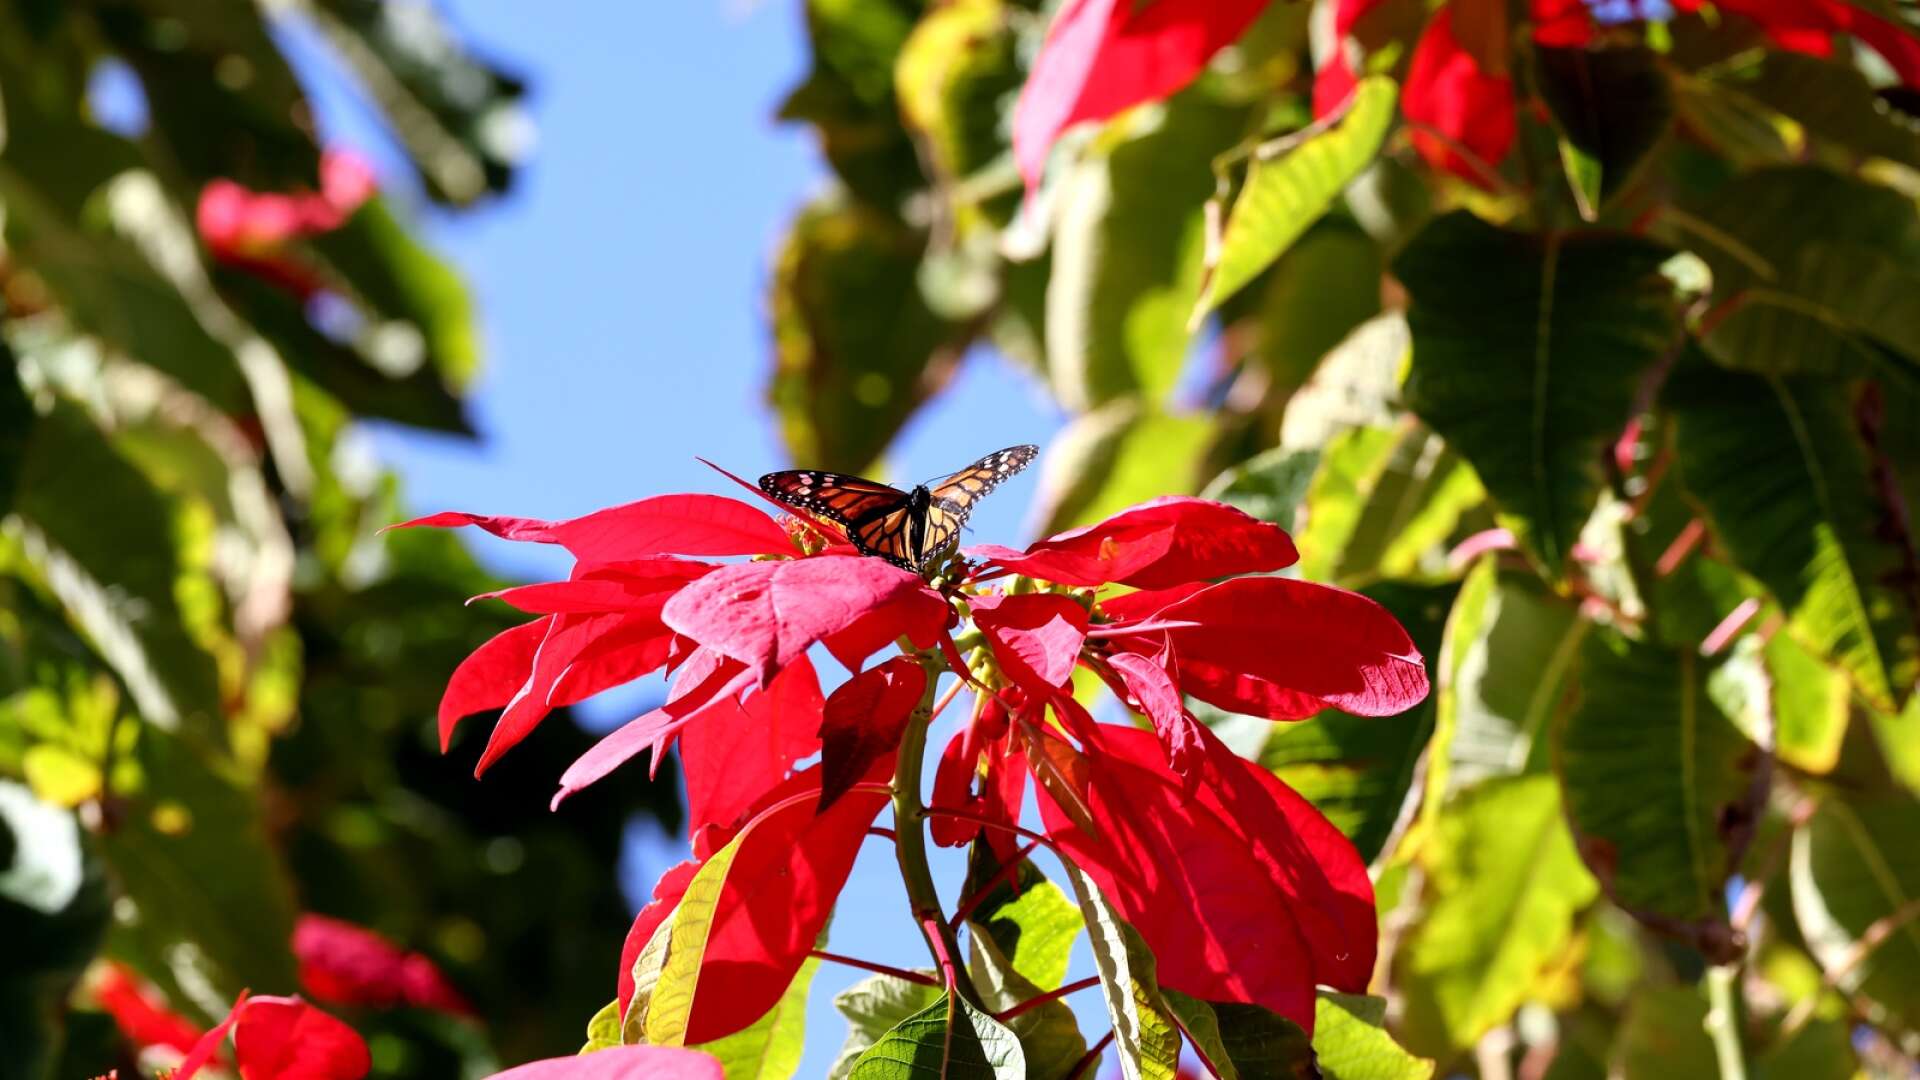 En hög och prunkande julstjärna i vilt tillstånd i Gran Canarias soliga och varma klimat. Här besöker en monarkfjäril den nektarrika blommande busken. Fjärilen finns etablerad på Kanarieöarna, emigrerad från Nordamerika och Mexiko. Både julstjärnan och monarkfjärilen finns talrikt i Mexiko.